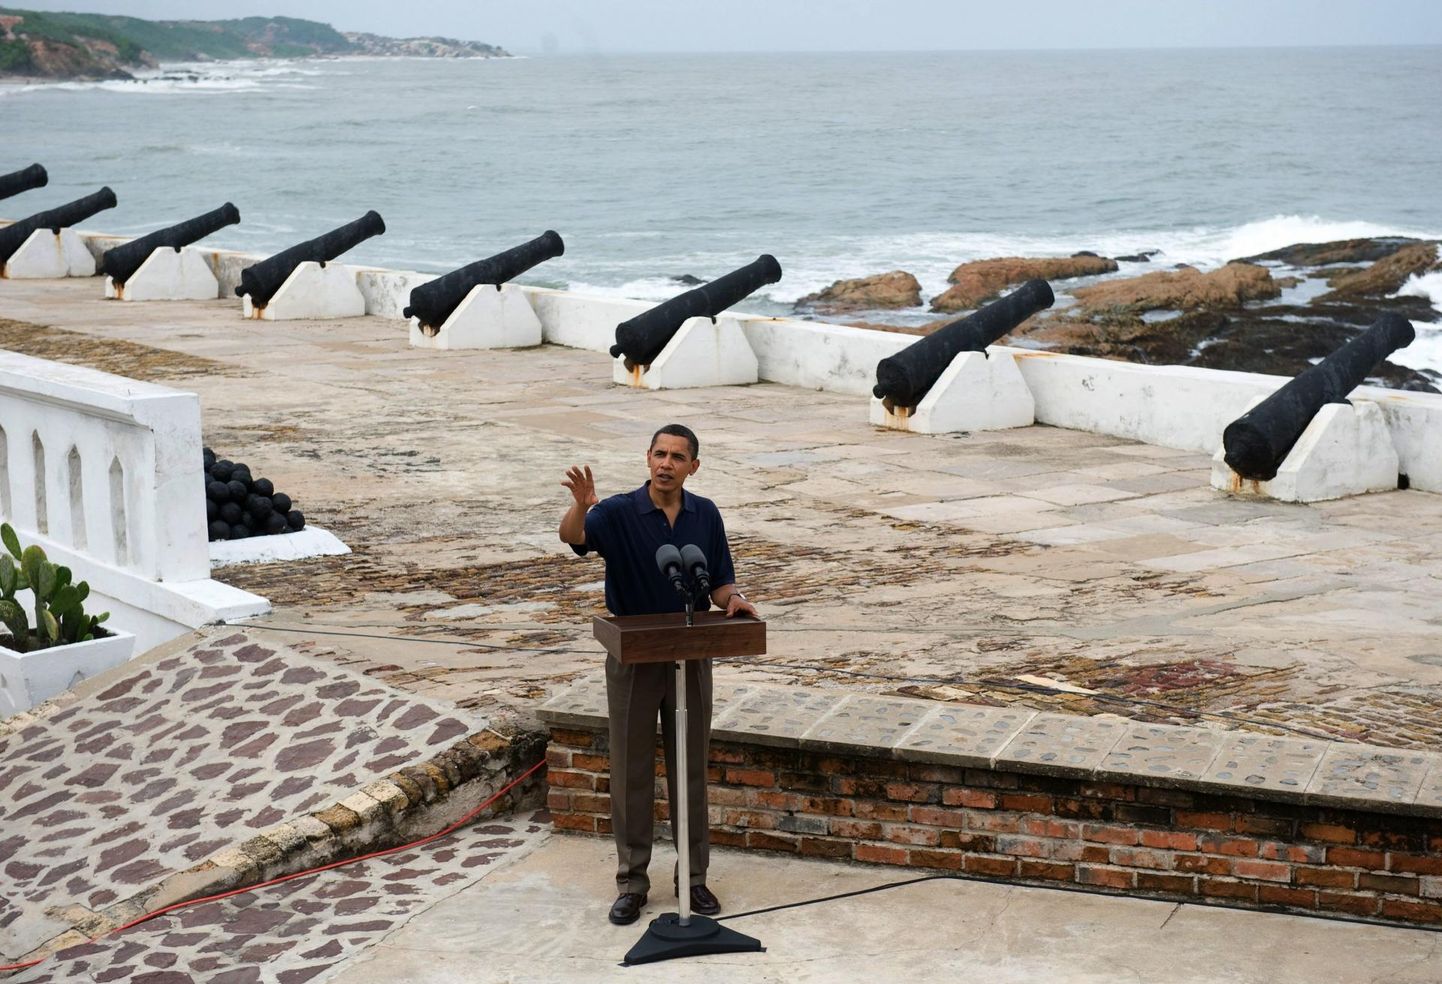 Ameerika Ühendriikide endine president Barack Obama külastas Cape Coast’i orjanduskindlust 2009. aastal ja nimetas seda sügavat kurbust tekitavaks kohaks. Kindlus püsib võimsa meeldetuletusena aastasadade eest alguse saanud orjakaubandusest. 